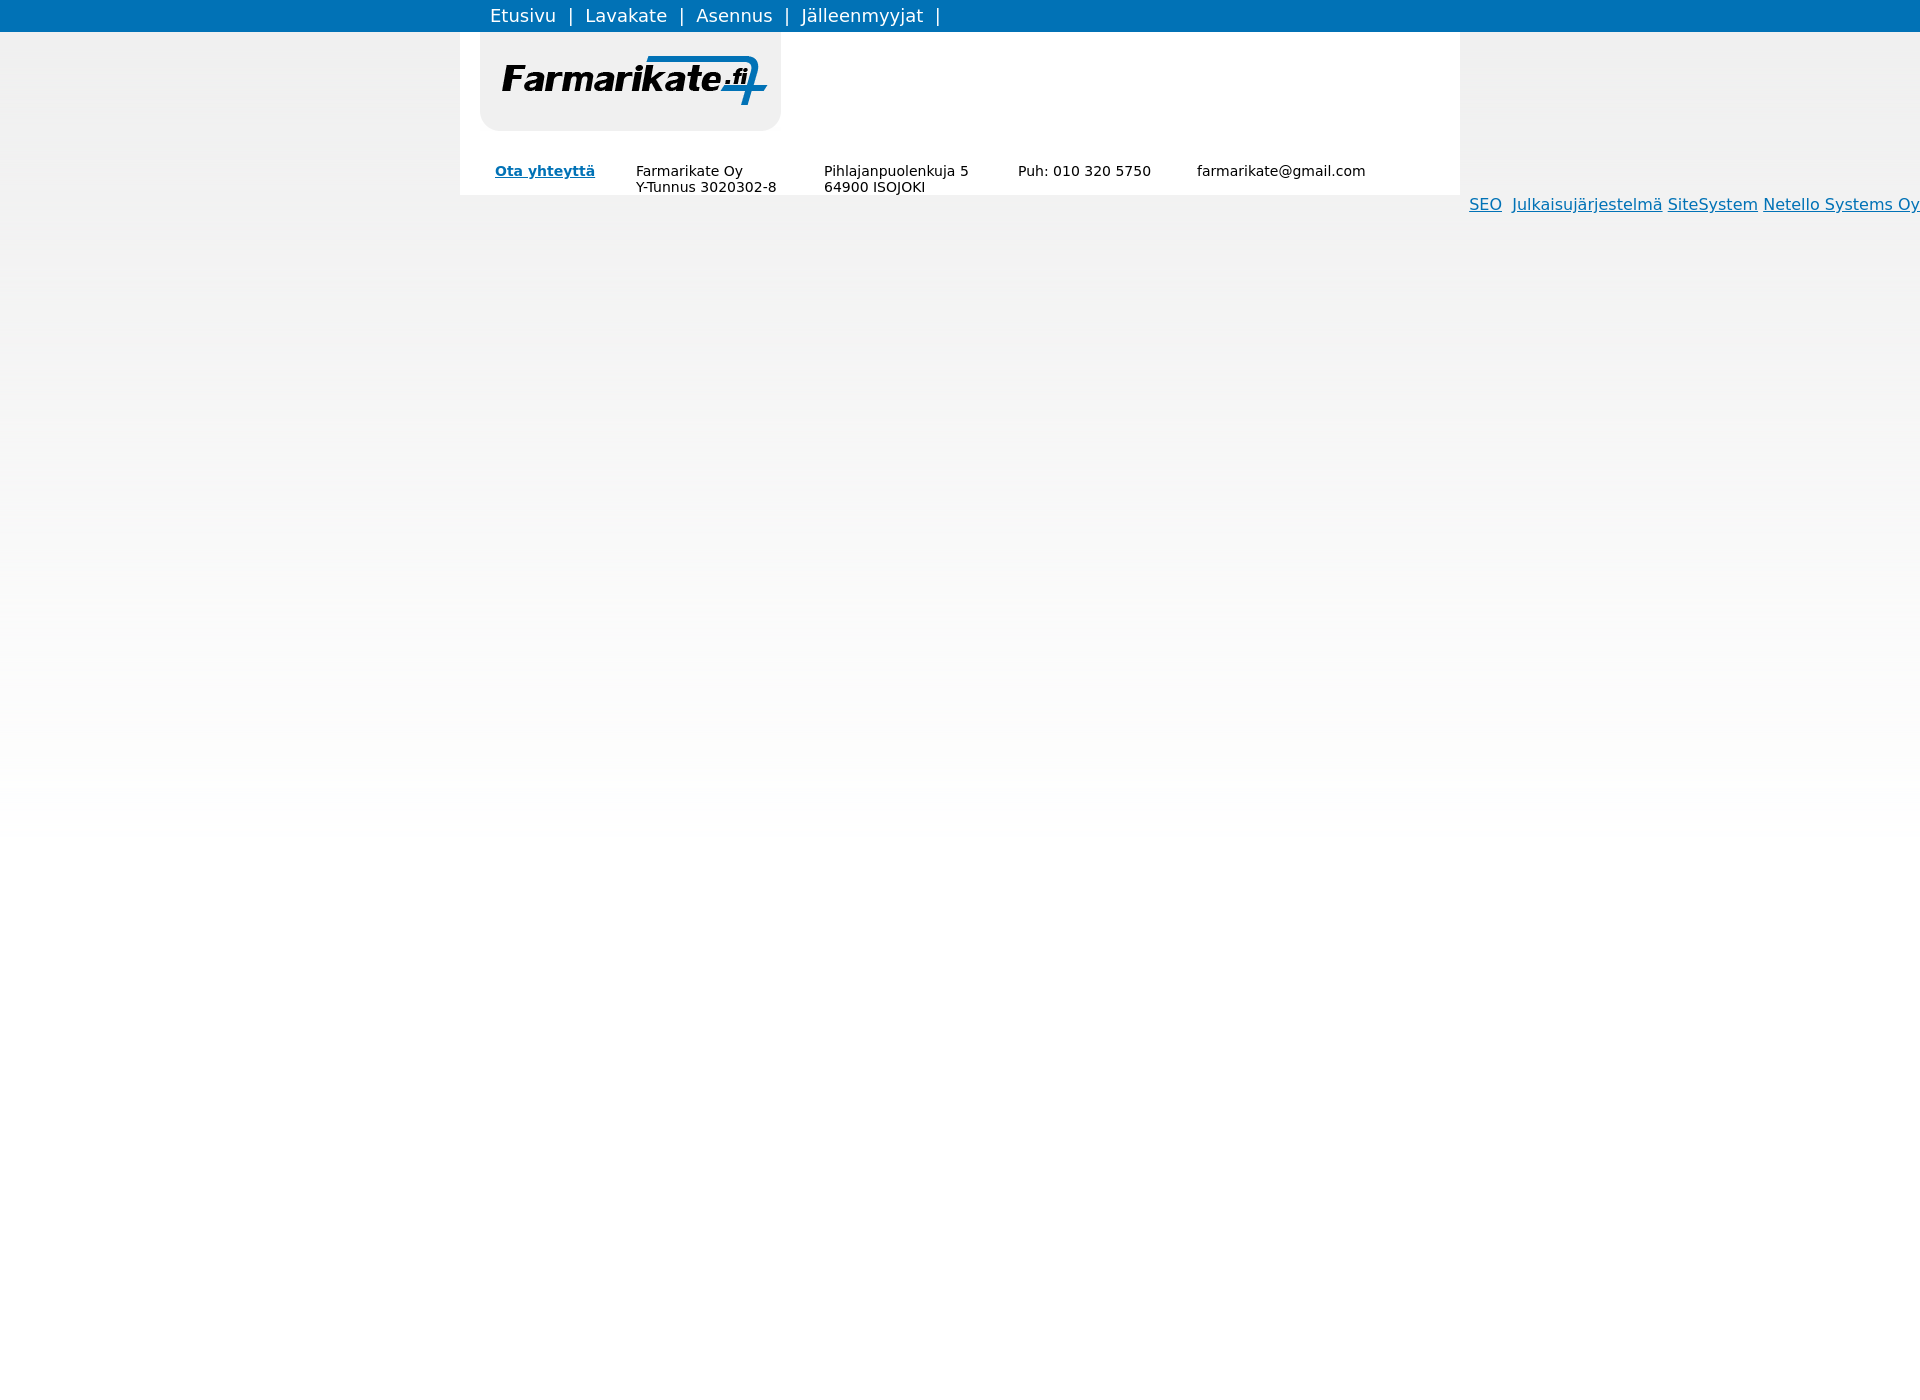 Screenshot for farmikate.fi